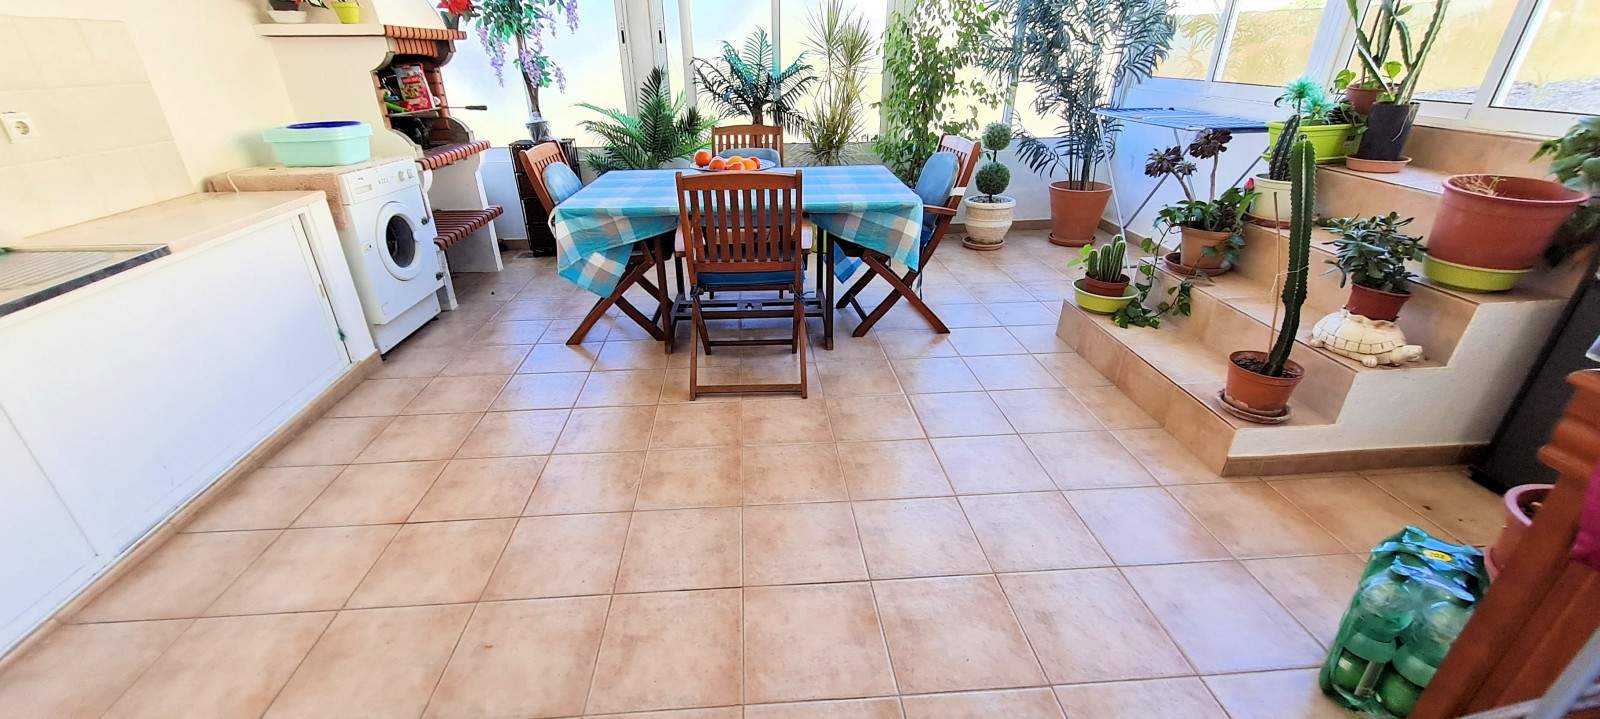 Moradia T2 com jardim, para venda, em São Brás de Alportel, Algarve_203401